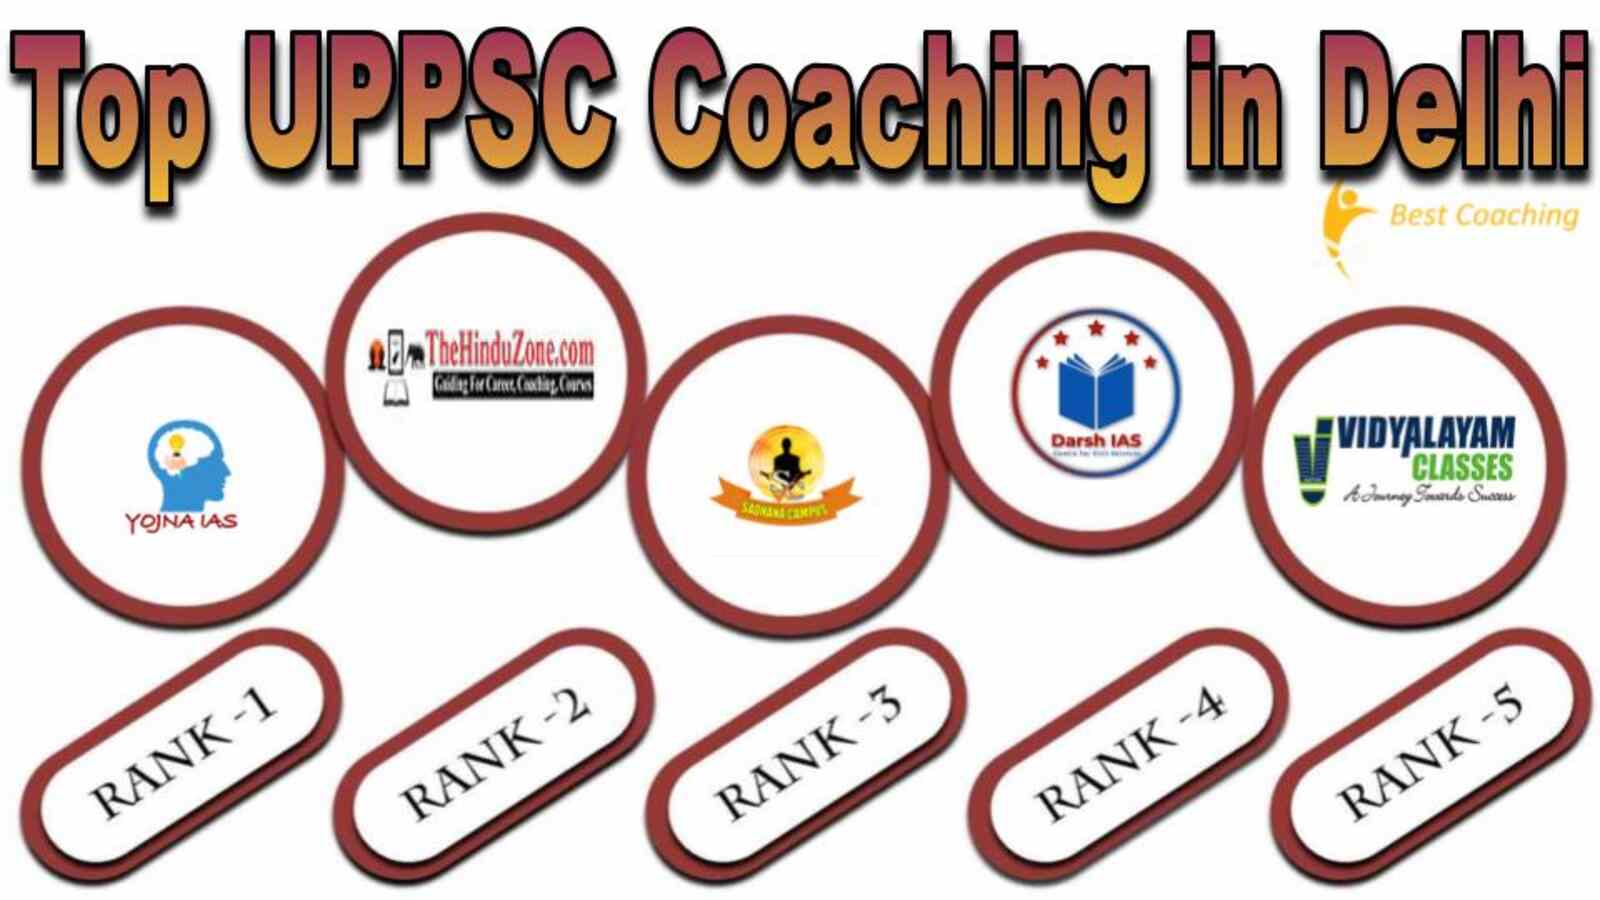 Top UPPSC Coaching in Delhi